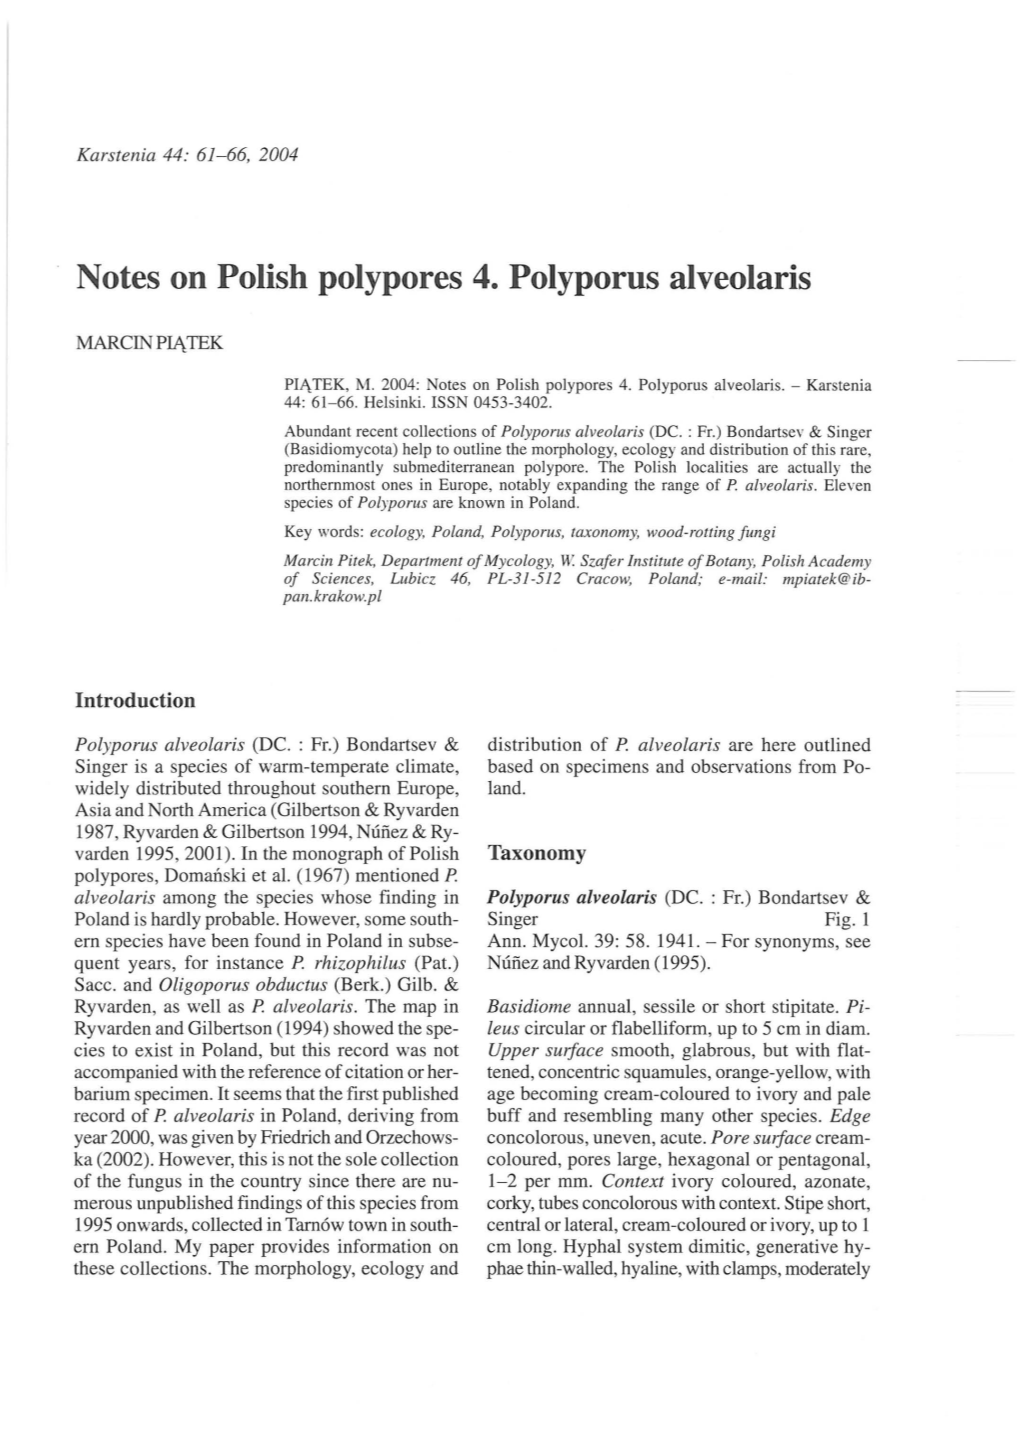 Notes on Polish Polypores 4. Polyporus Alveolaris